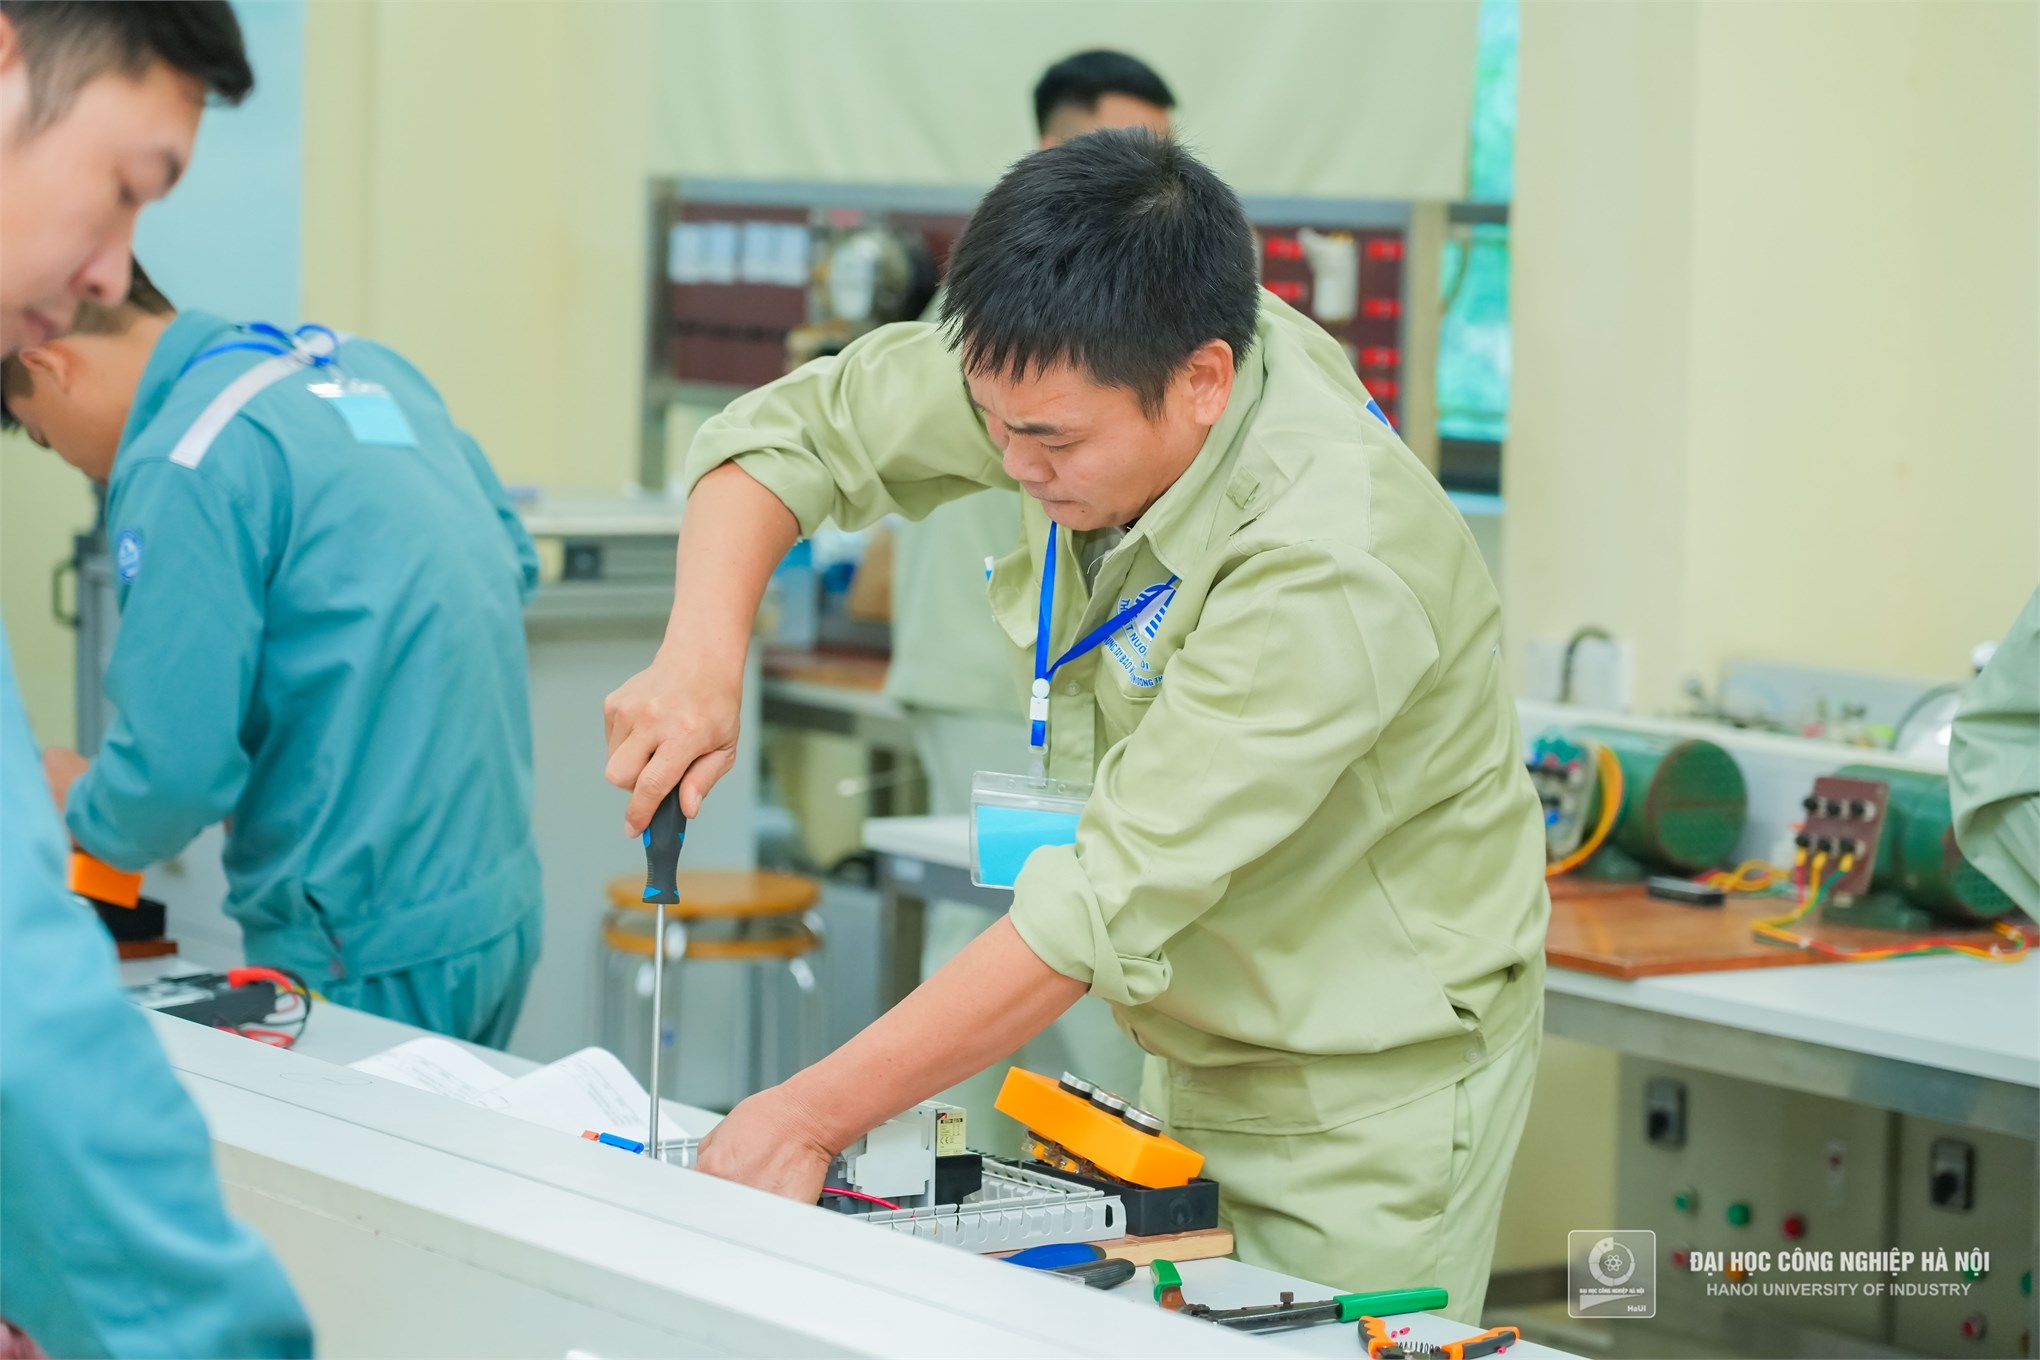 Hội thi thợ giỏi ngành xây dựng Hà Nội 2022 được tổ chức tại Trường Đại học Công Nghiệp Hà Nội